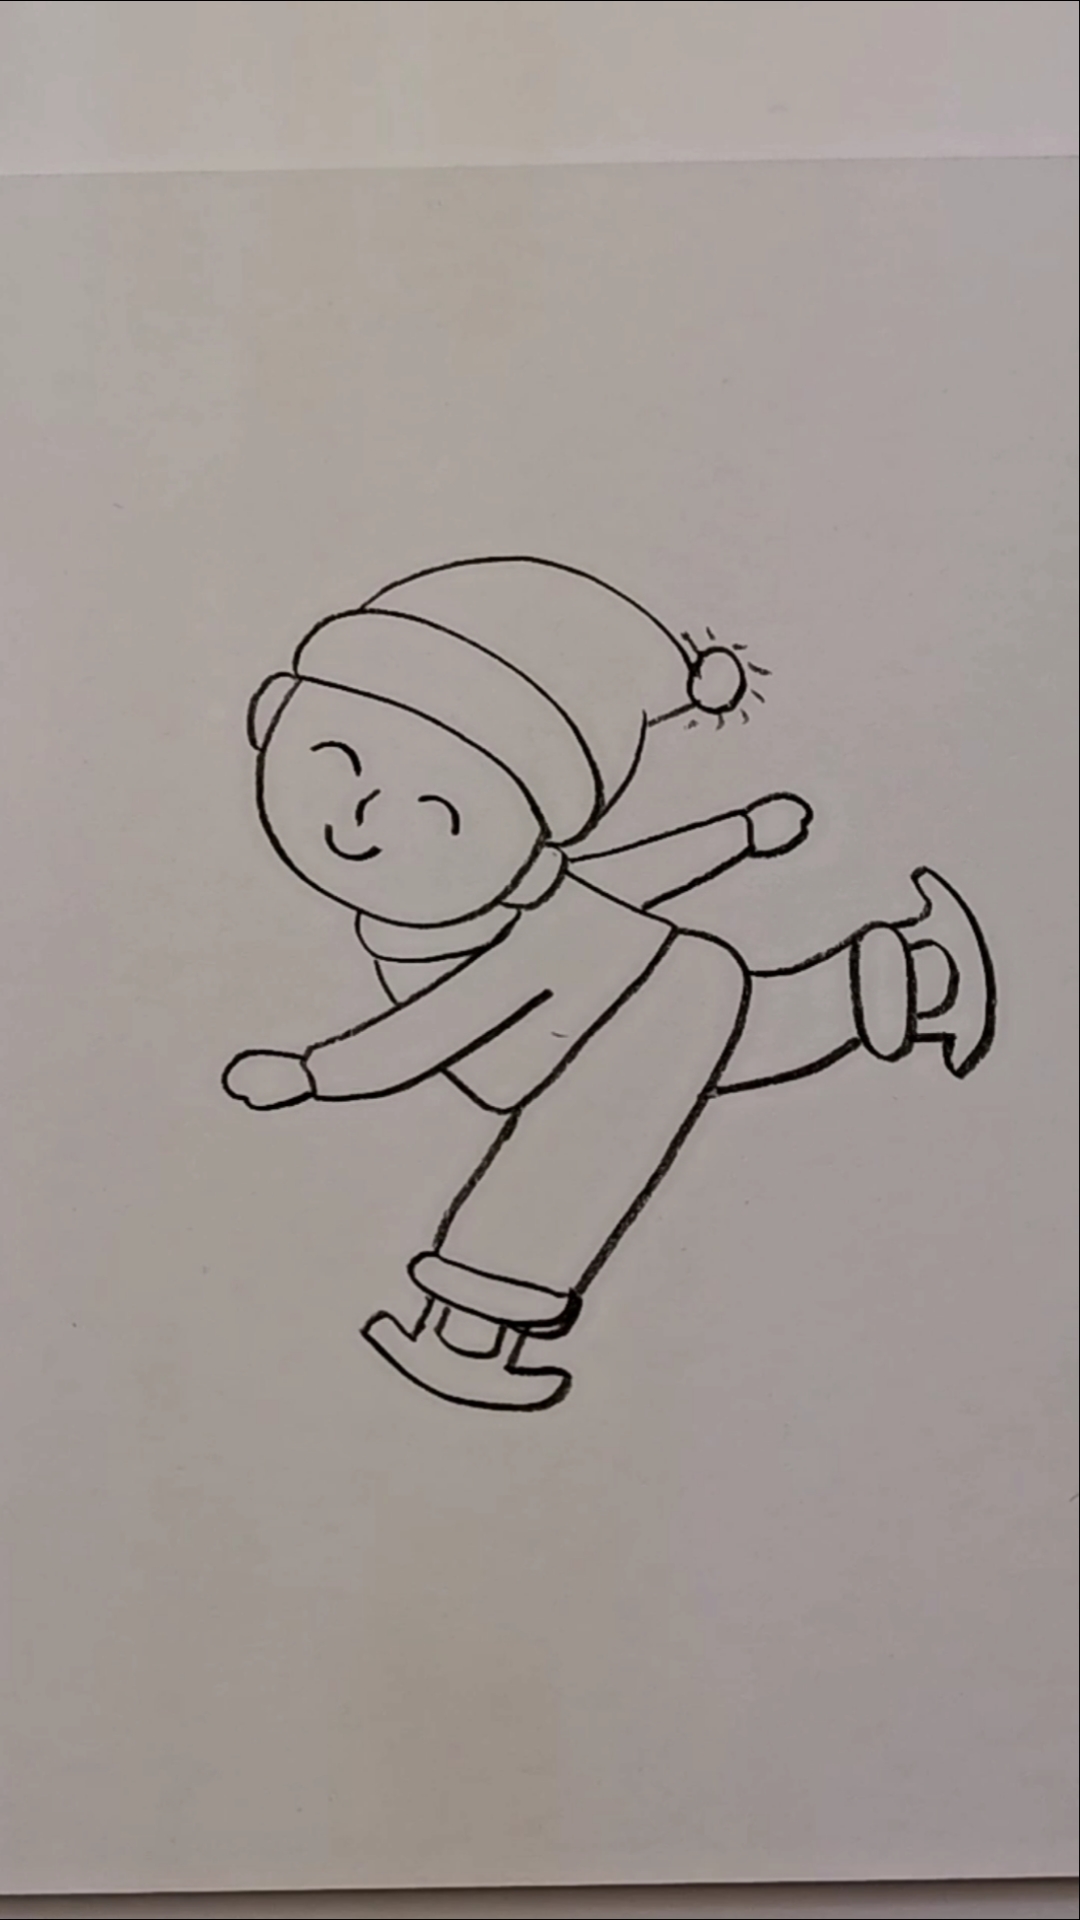 小朋友滑雪简笔画男孩图片